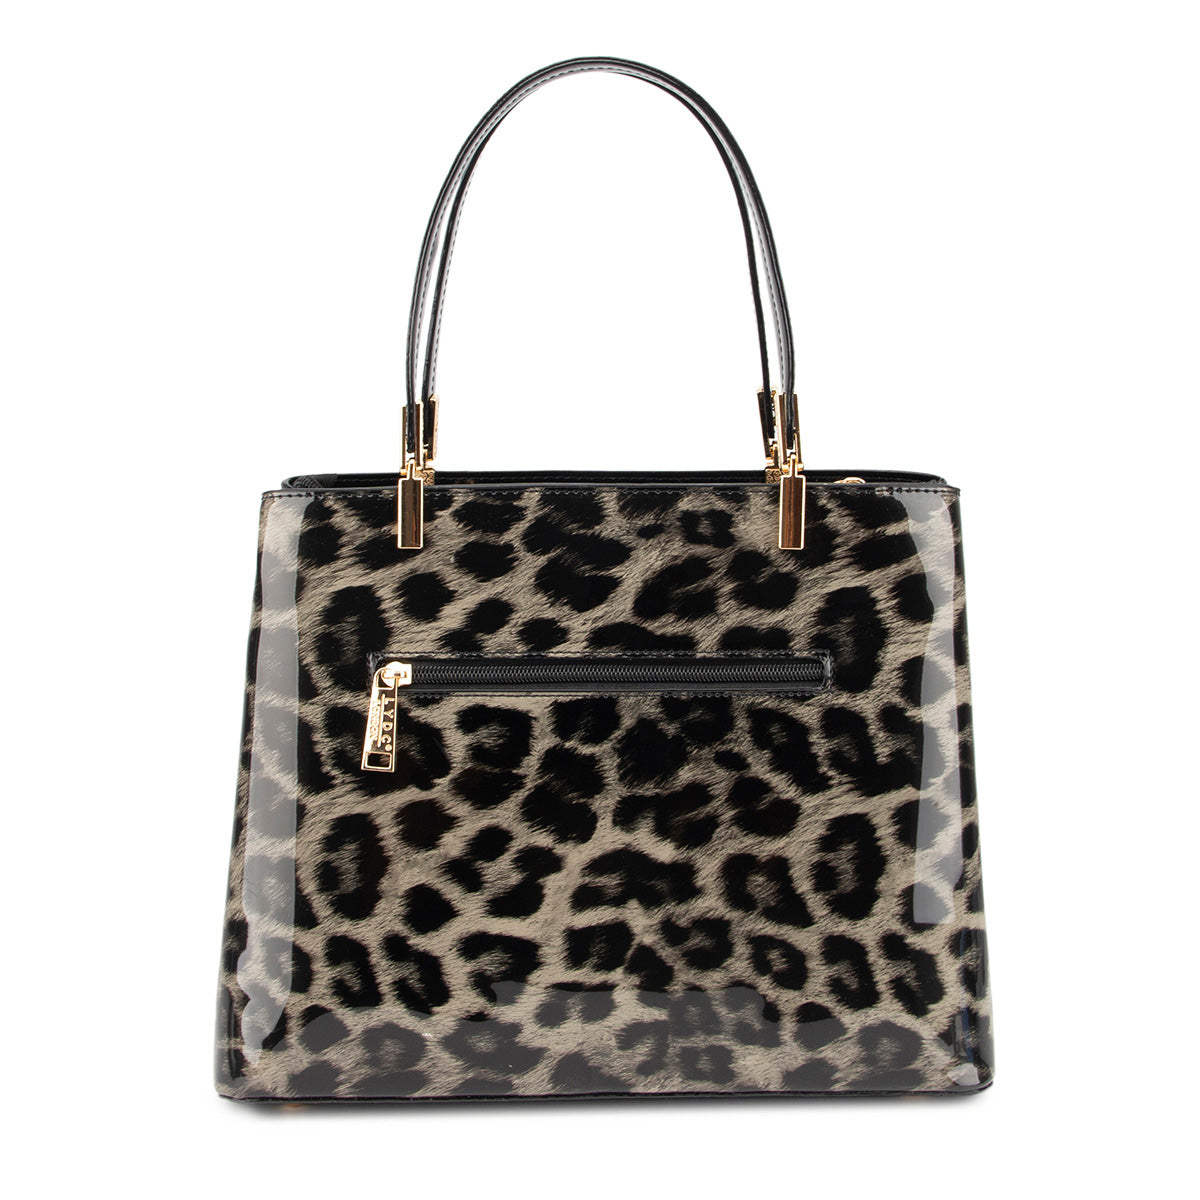 LYDC Stylish Leopard Pattern Handbag